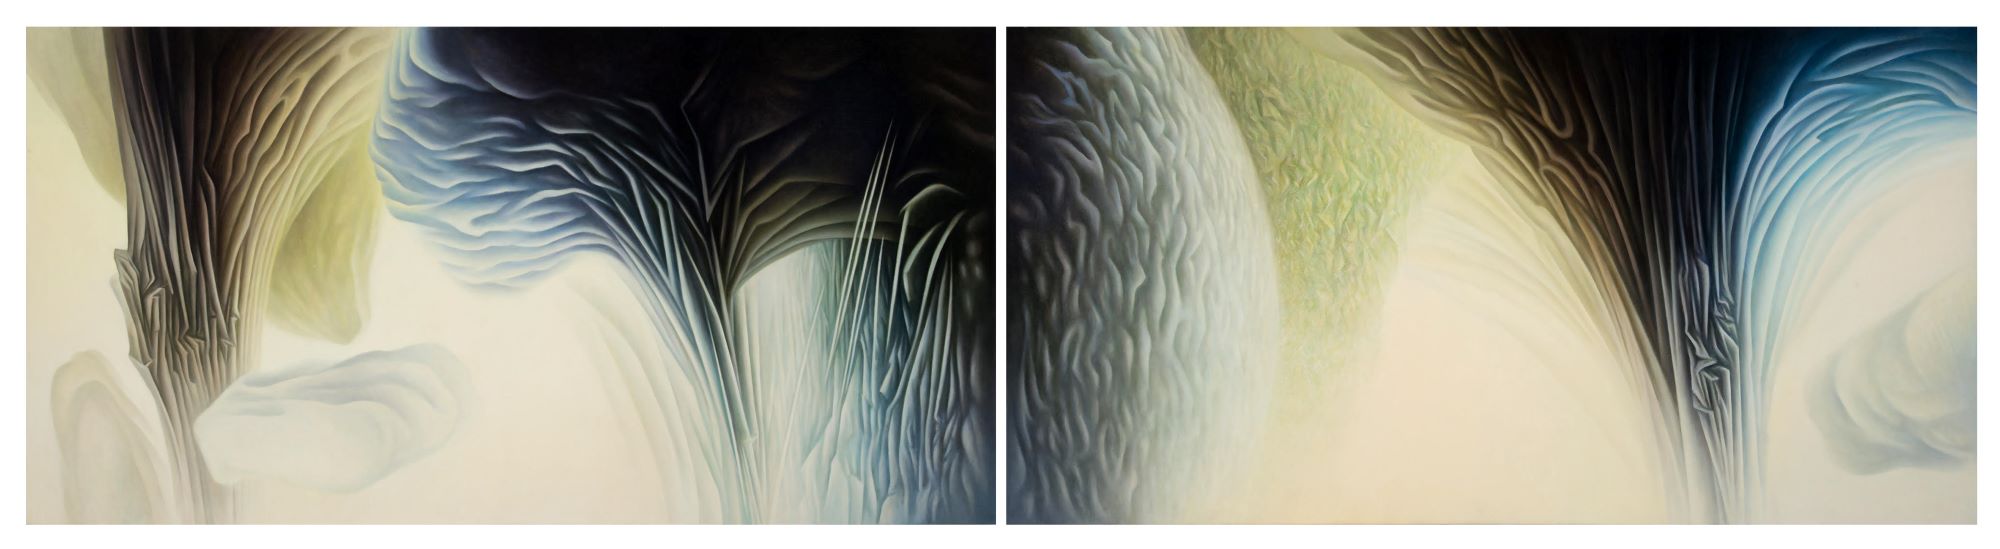 Roger Byrt, The Melt Zone, 2019, oil on linen, 2 panels, total 102 x 396 cm, $18,000